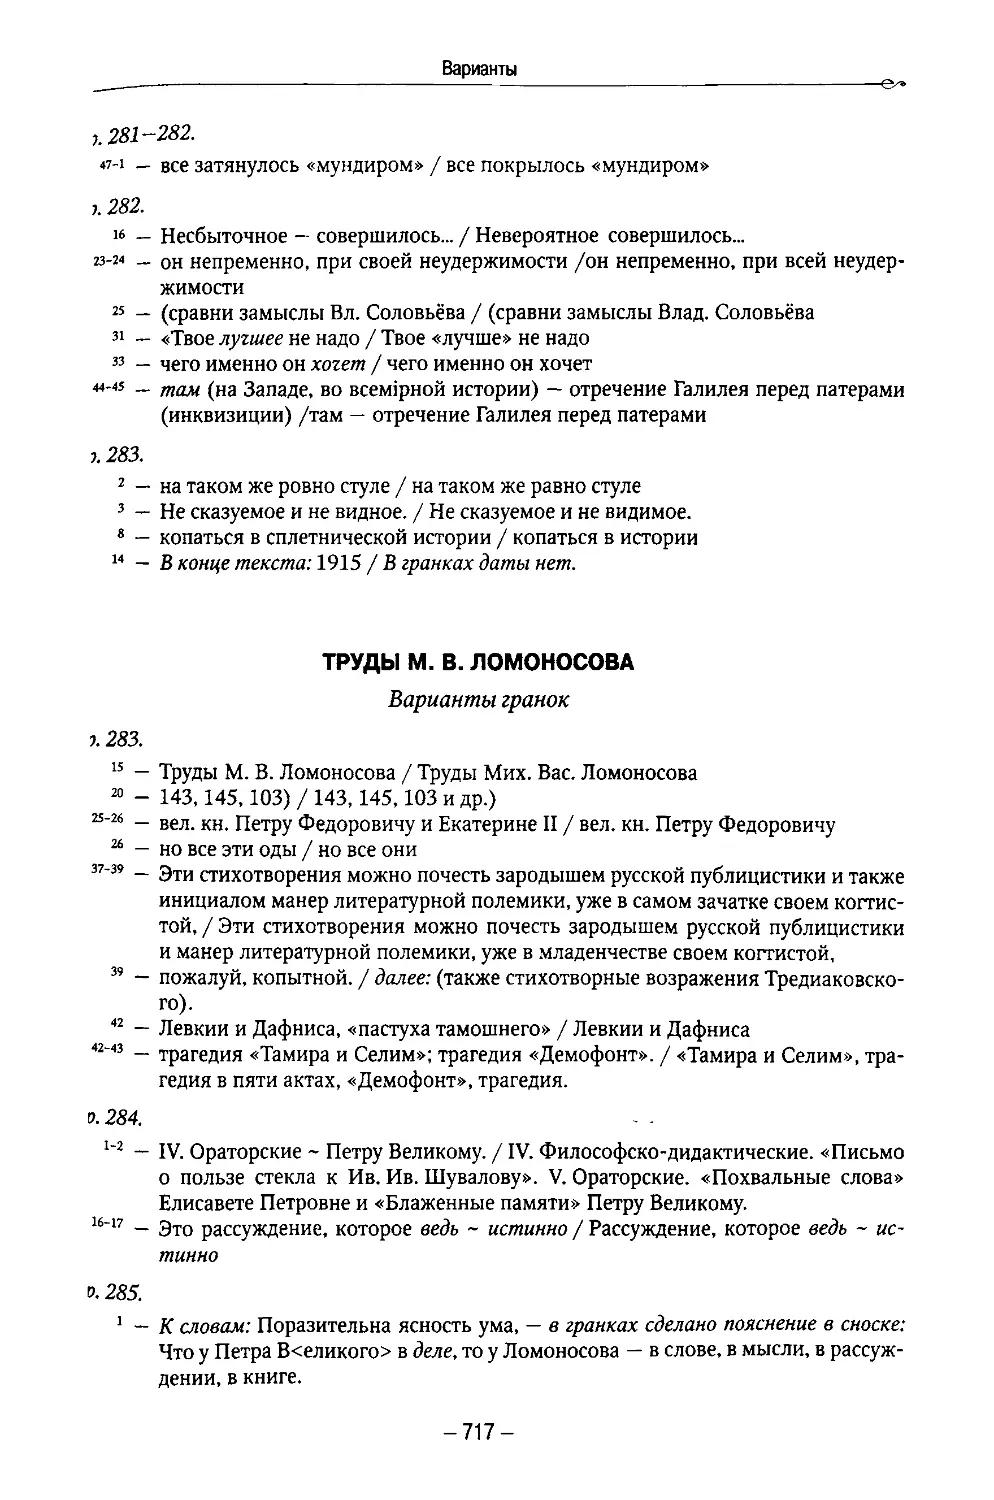 Труды М. В. Ломоносова